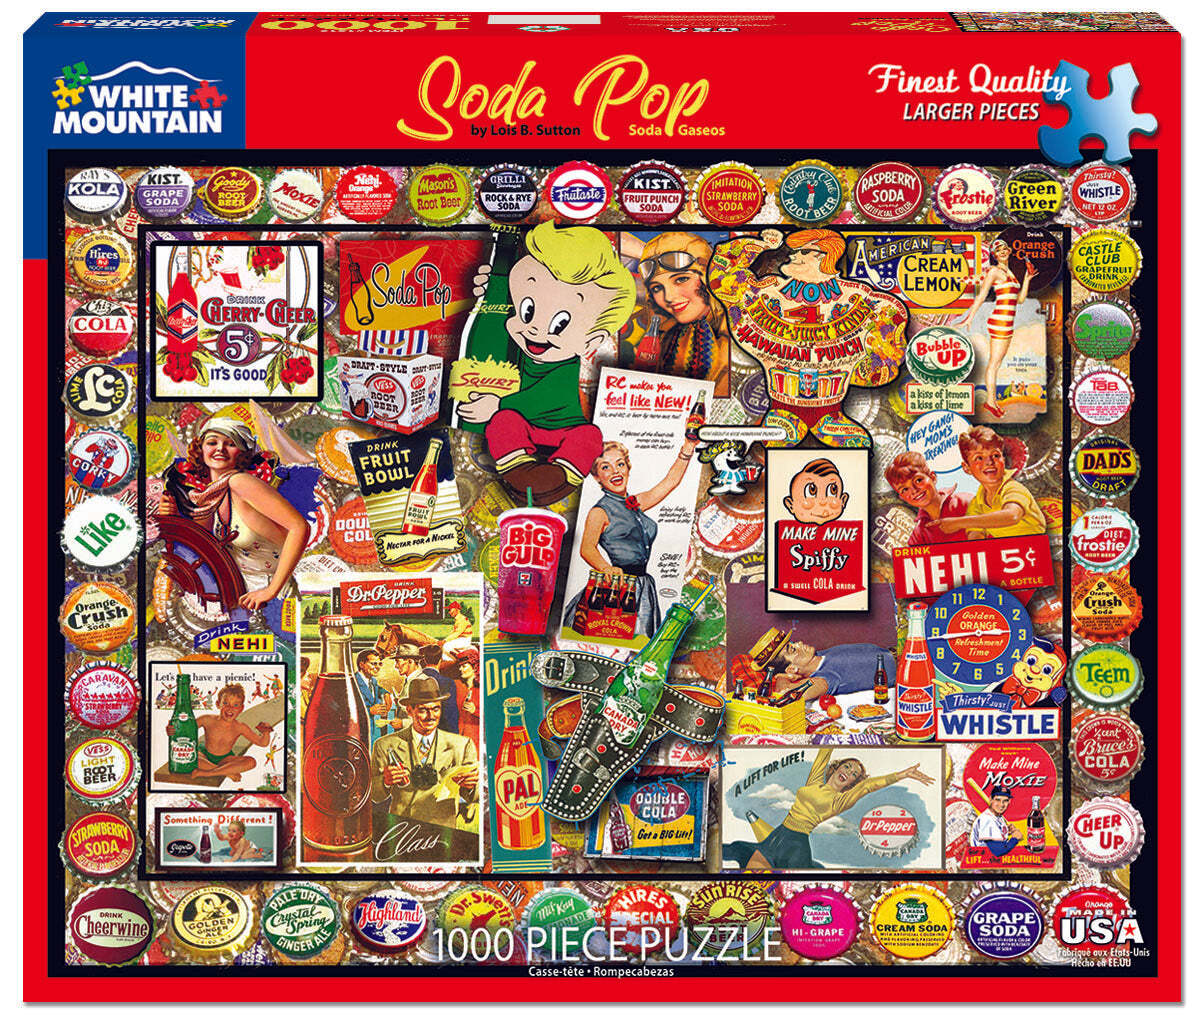 Soda Pop (1519pz) - 1000 Piece Jigsaw Puzzle